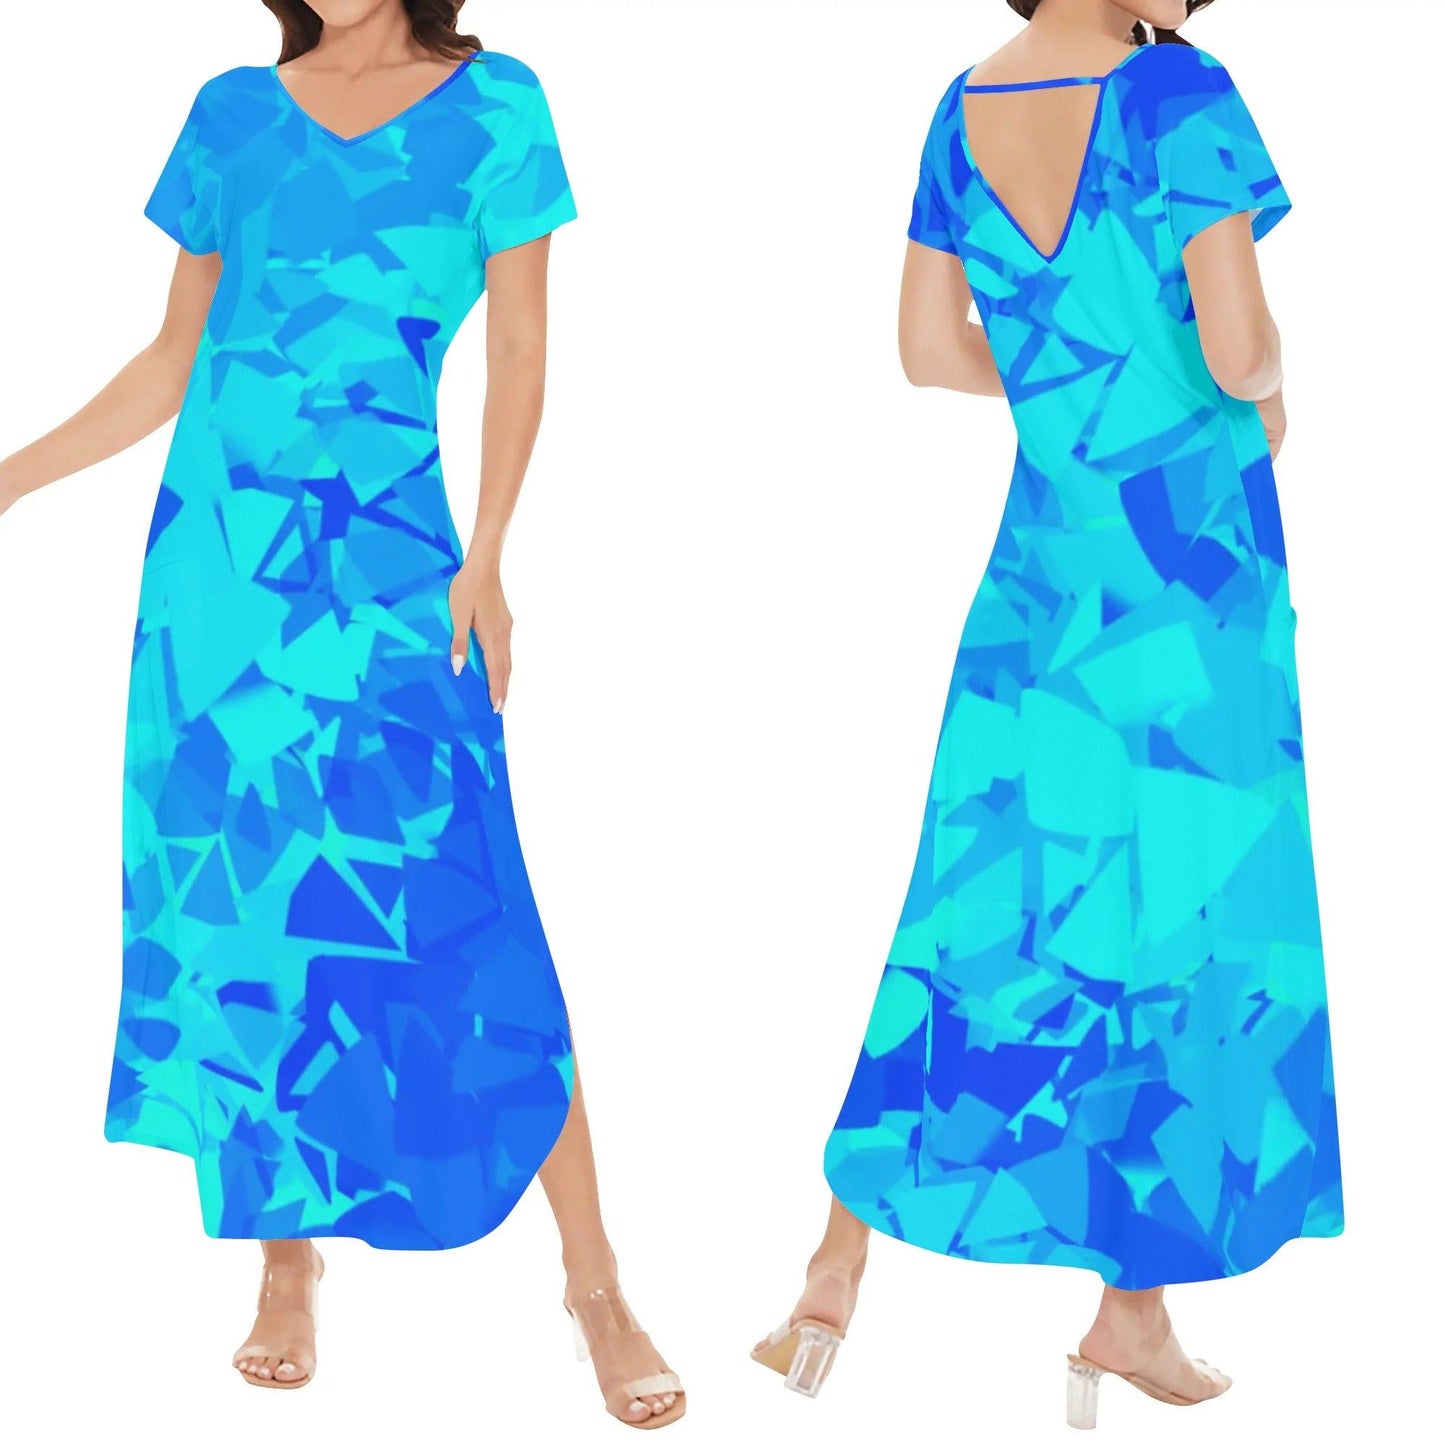 Blue Crystal kurzärmliges drapiertes Kleid drapiertes Kleid 63.99 Blue, Crystal, darpiert, kleid, kurzärmlig JLR Design